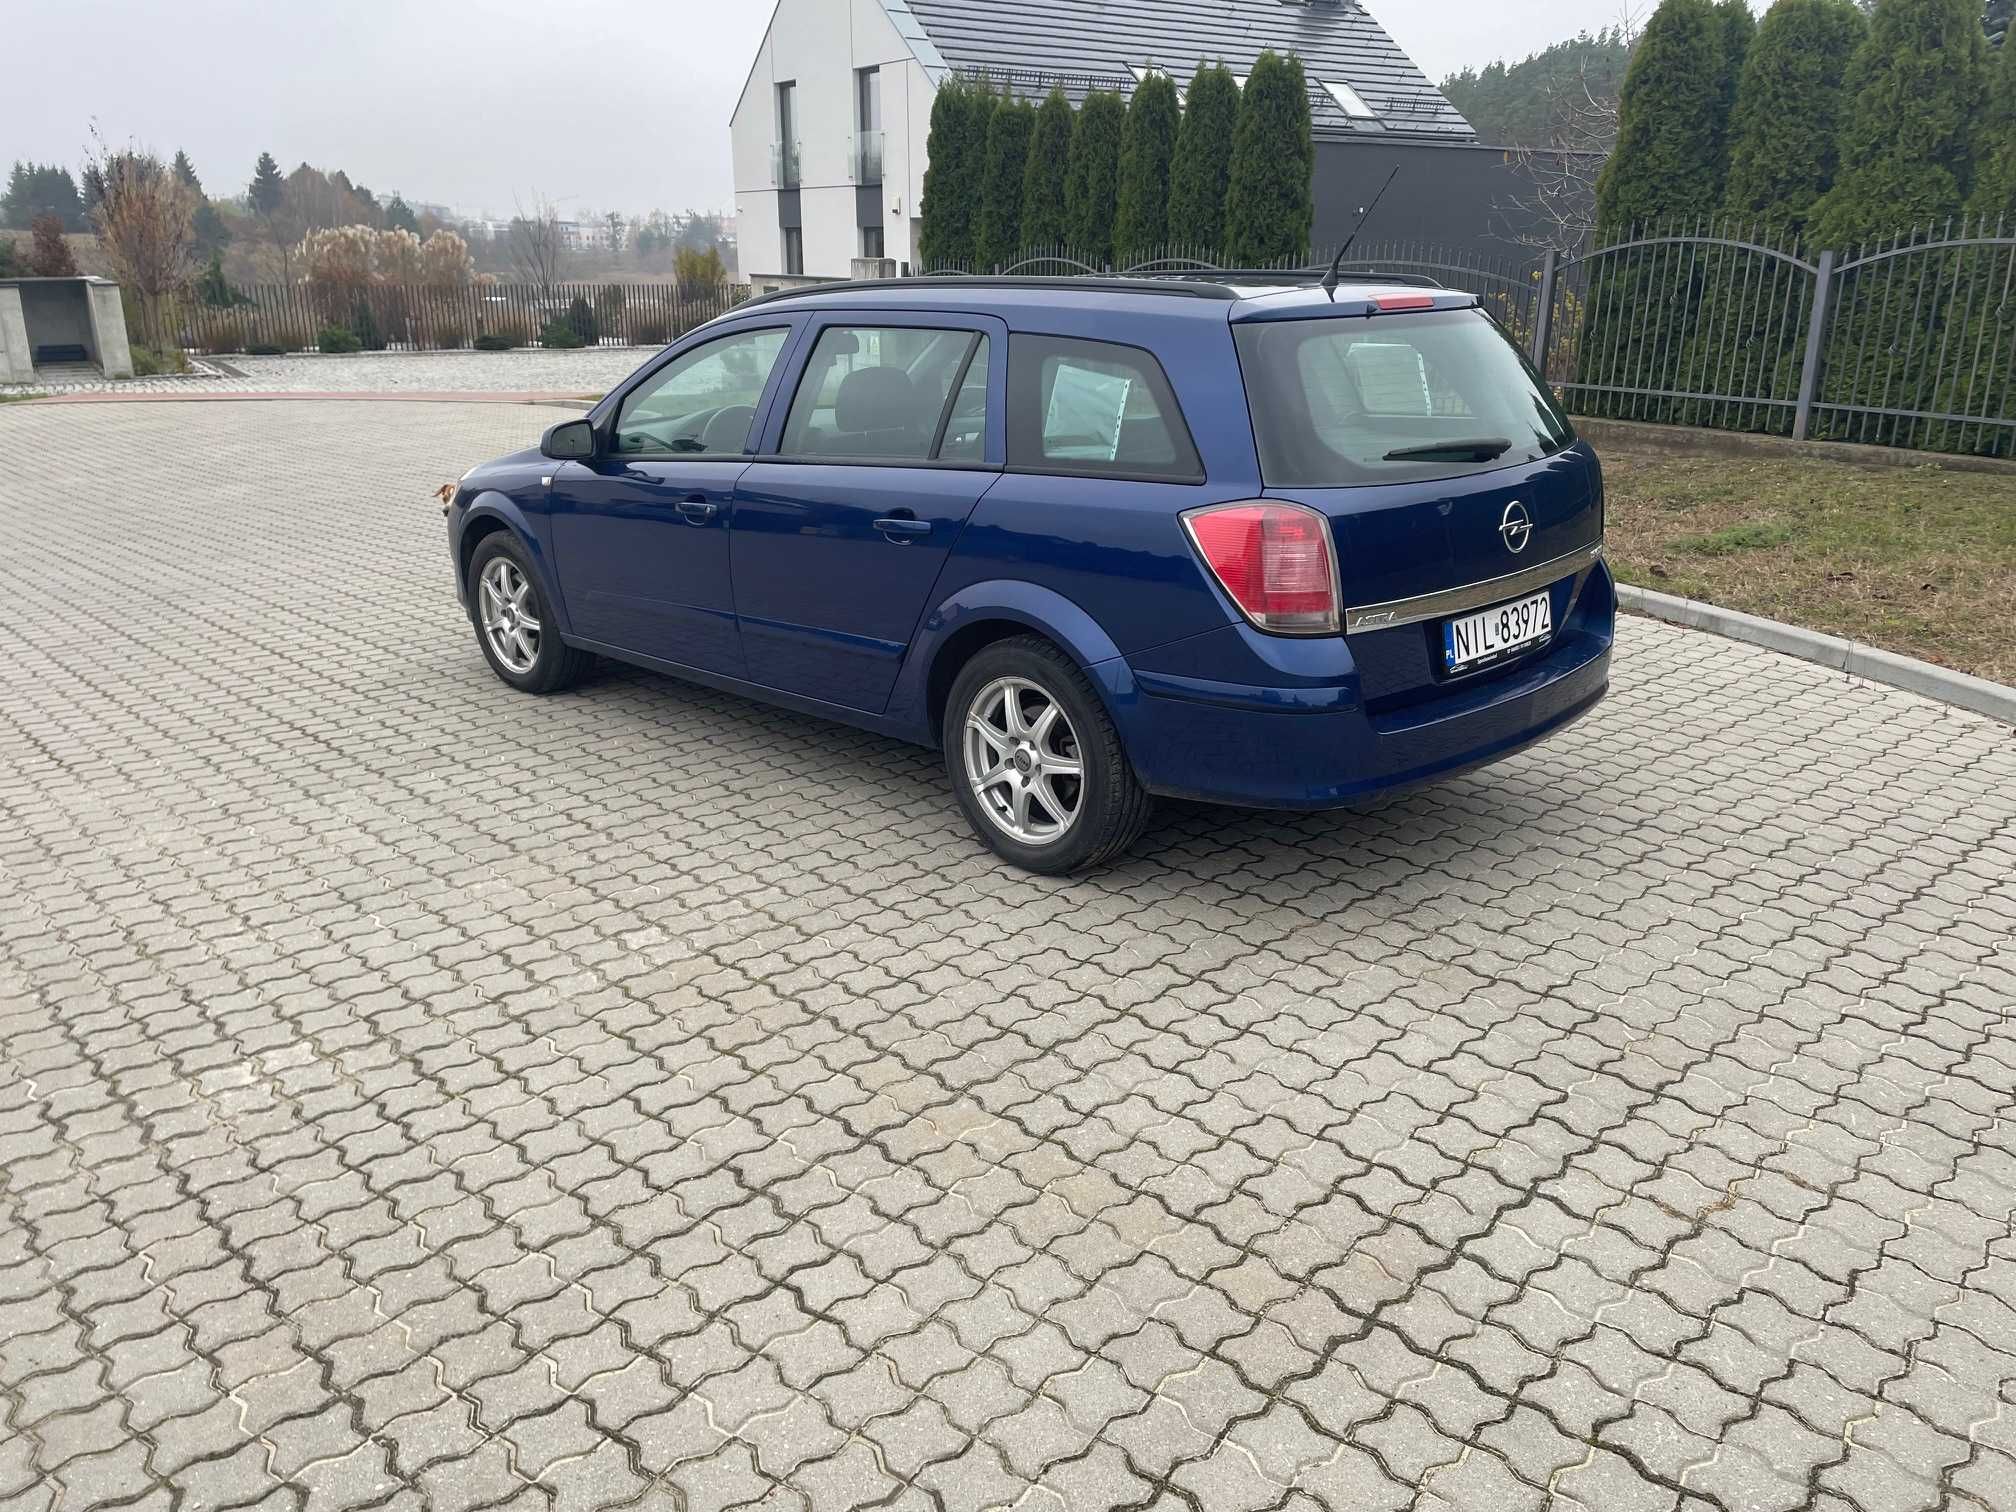 Sprzedam Opel Astra H 1.9CDTI